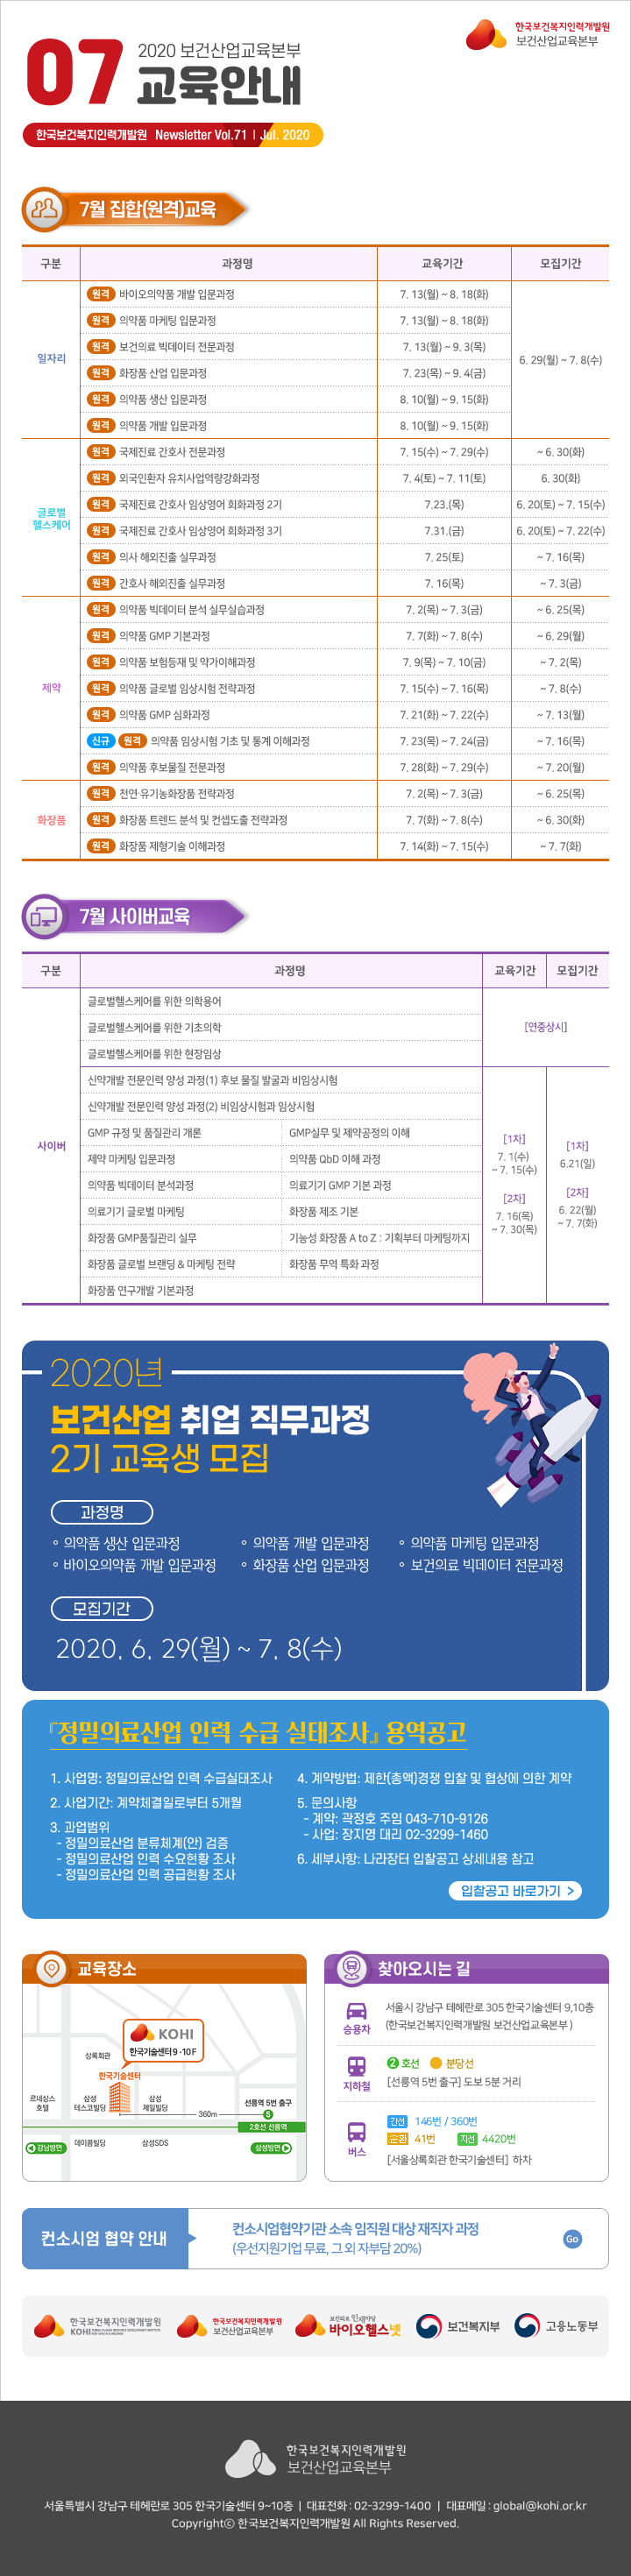 한국보건복지인재원 보건산업교육본부 뉴스레터